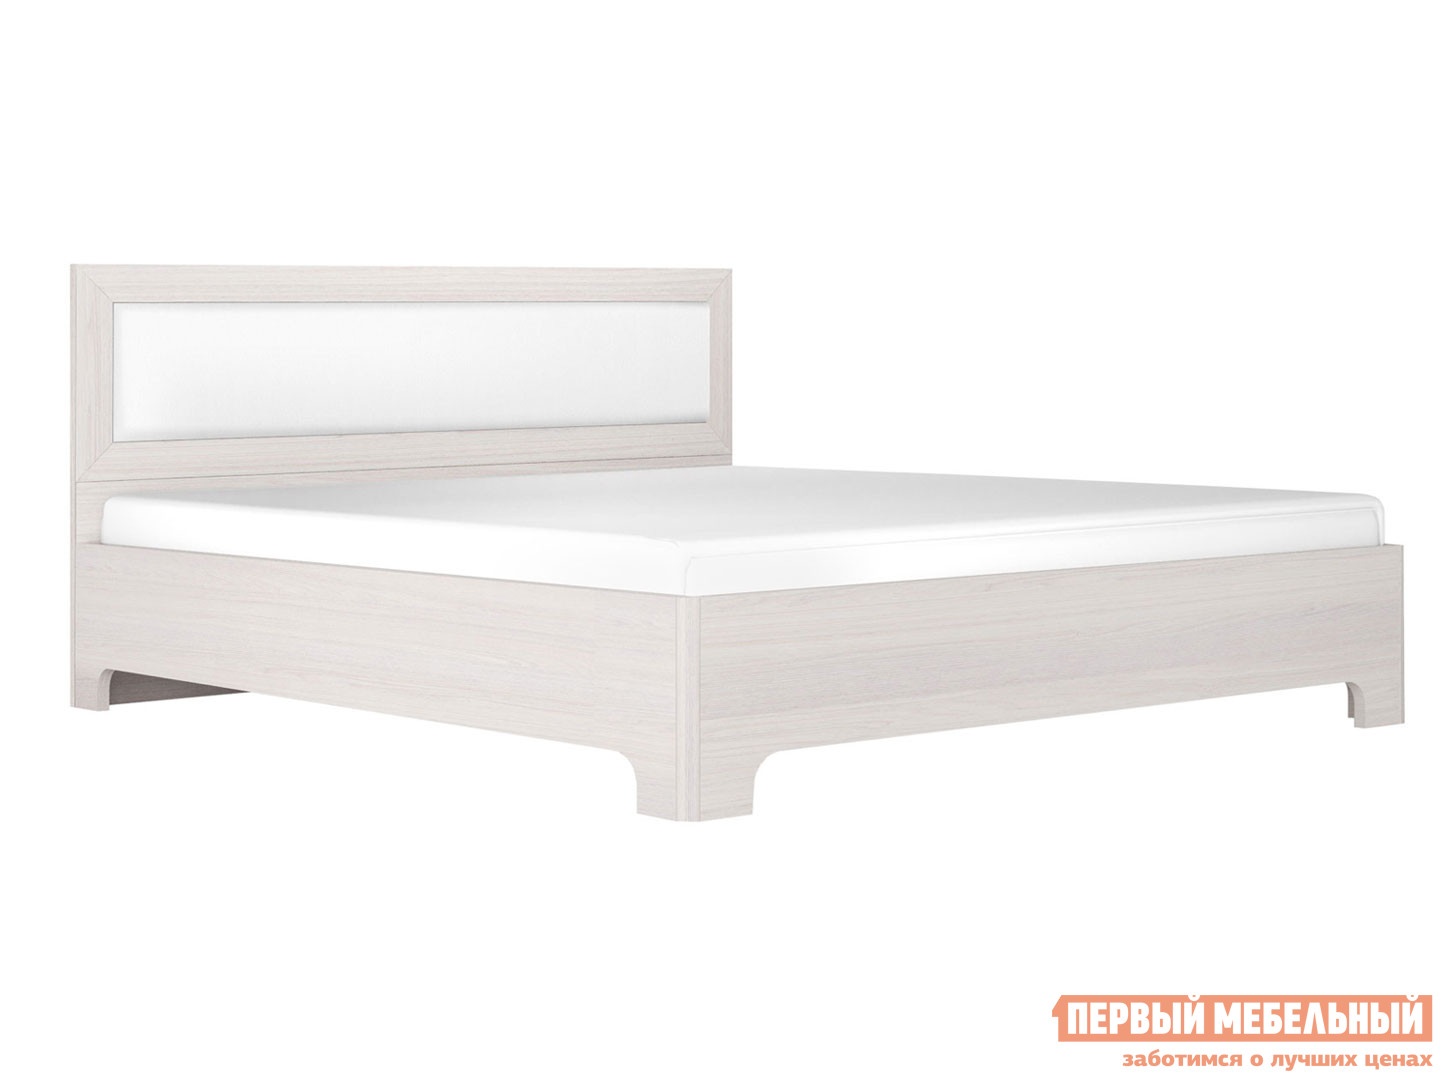 Односпальная кровать кровать-1 ясень анкор светлый экокожа белая, 1200 х 2000 мм preview 1